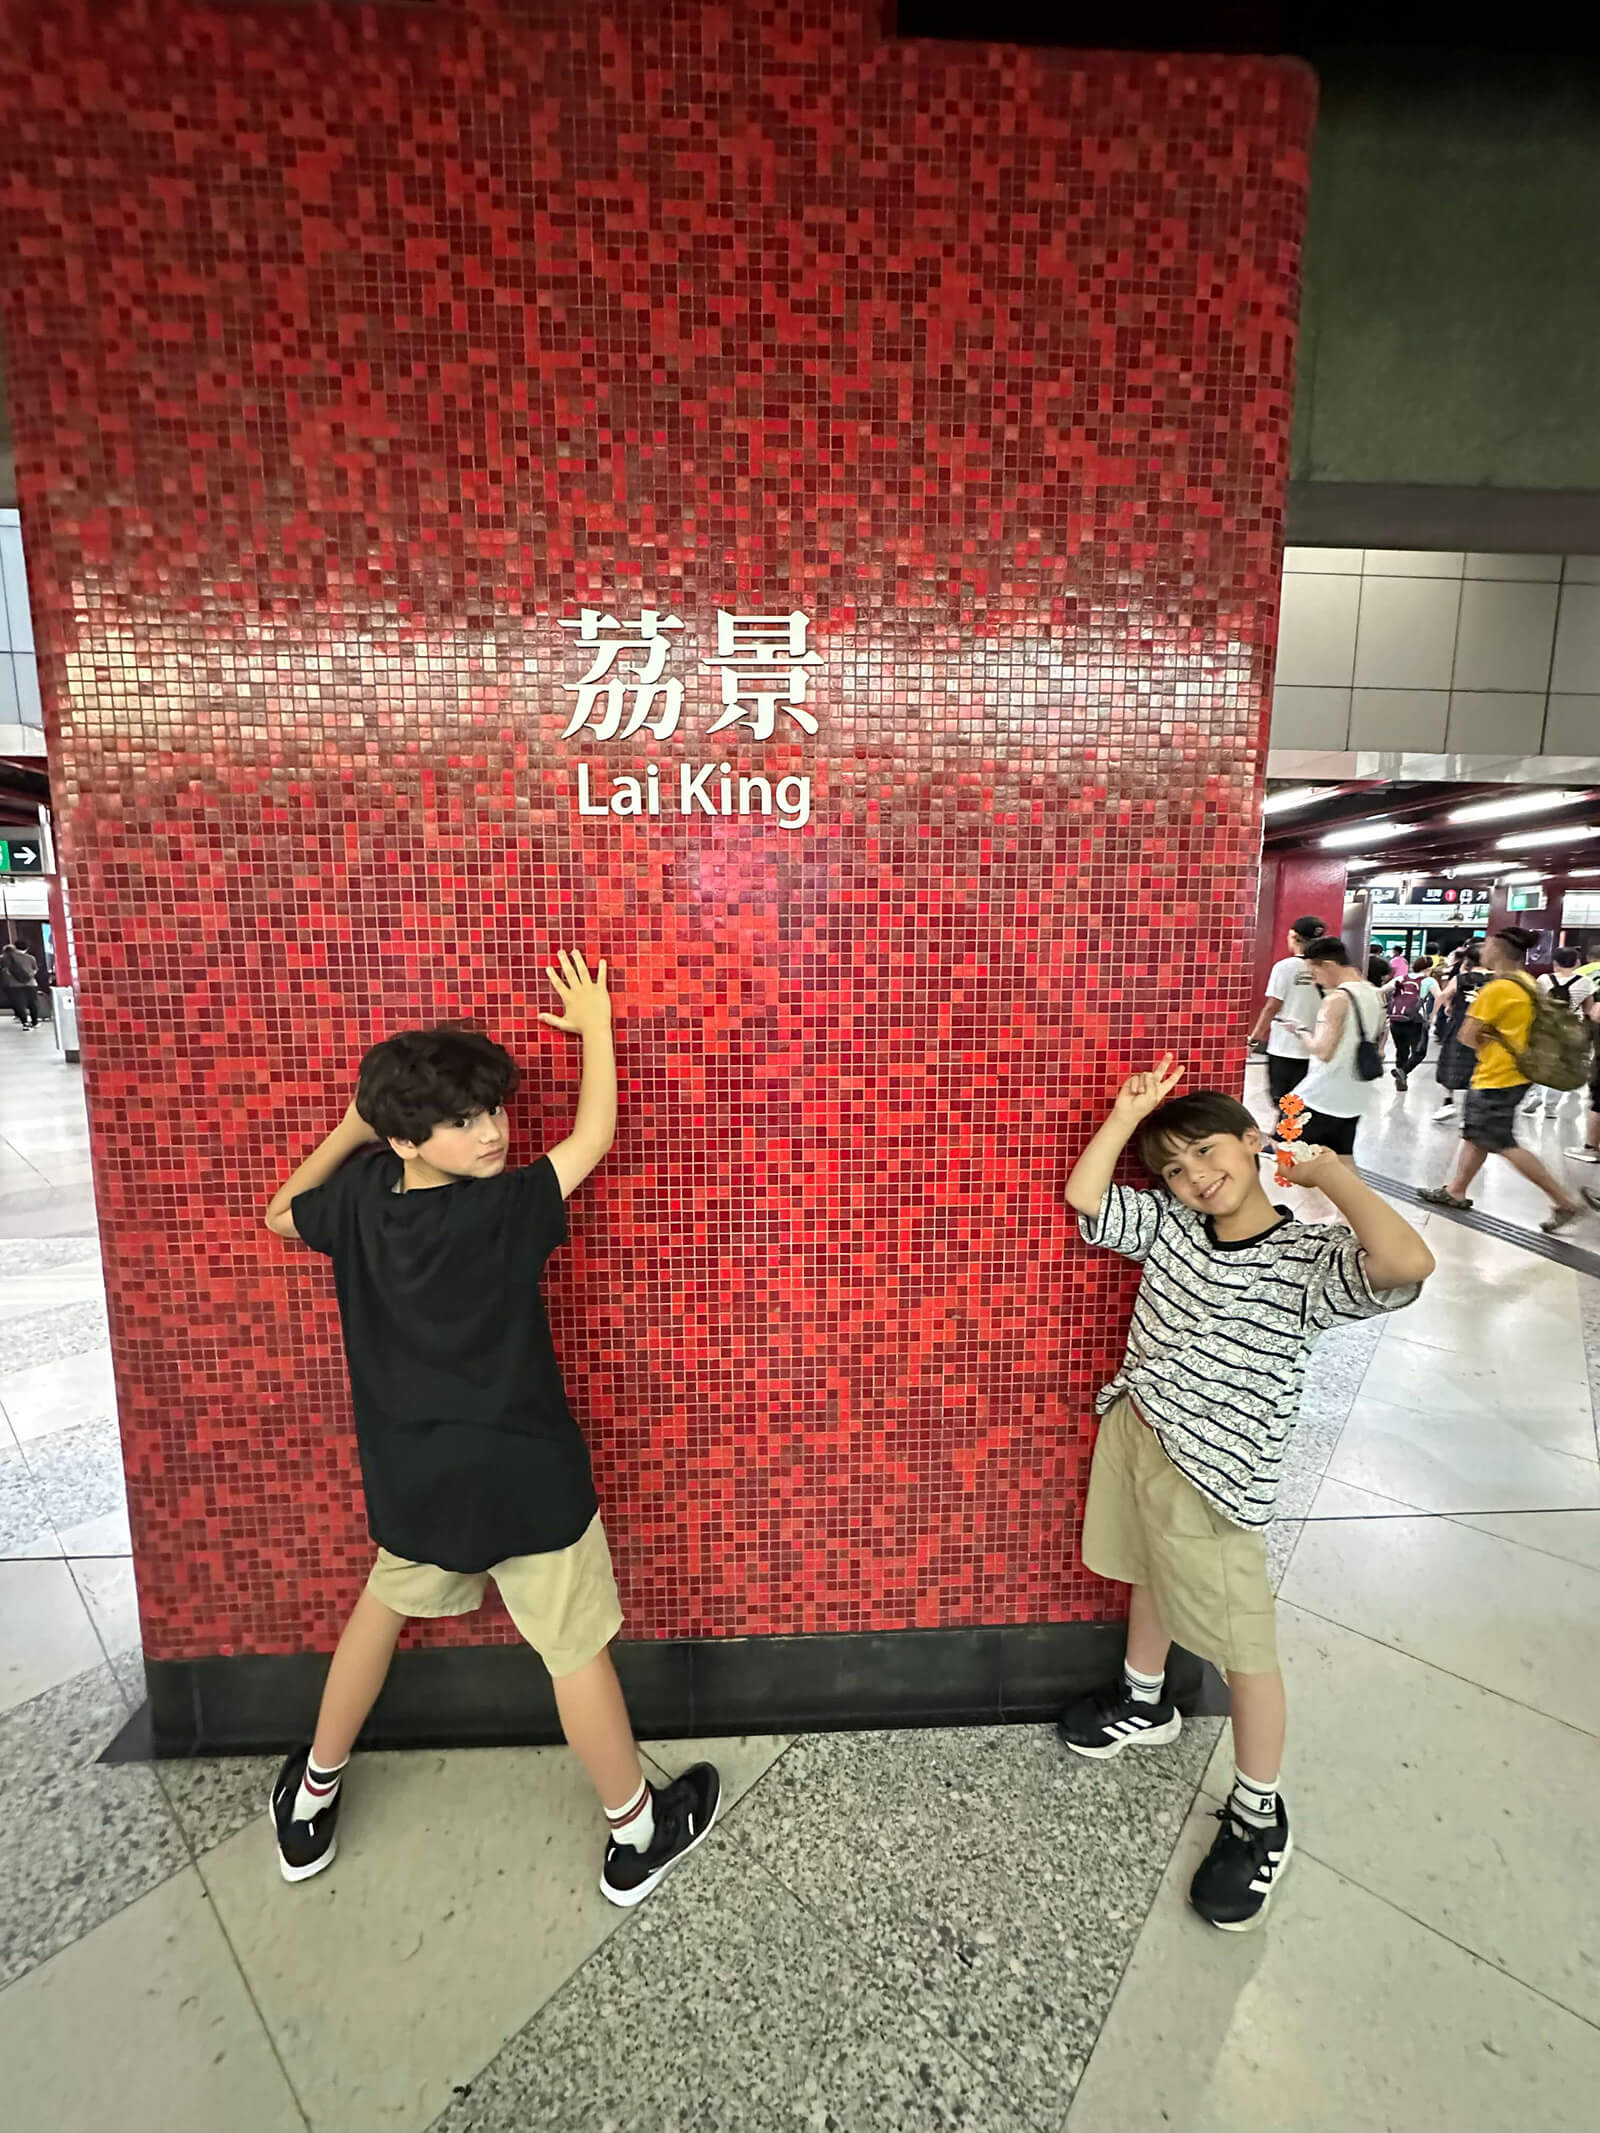 香港の駅の名前が書いてあるタイル